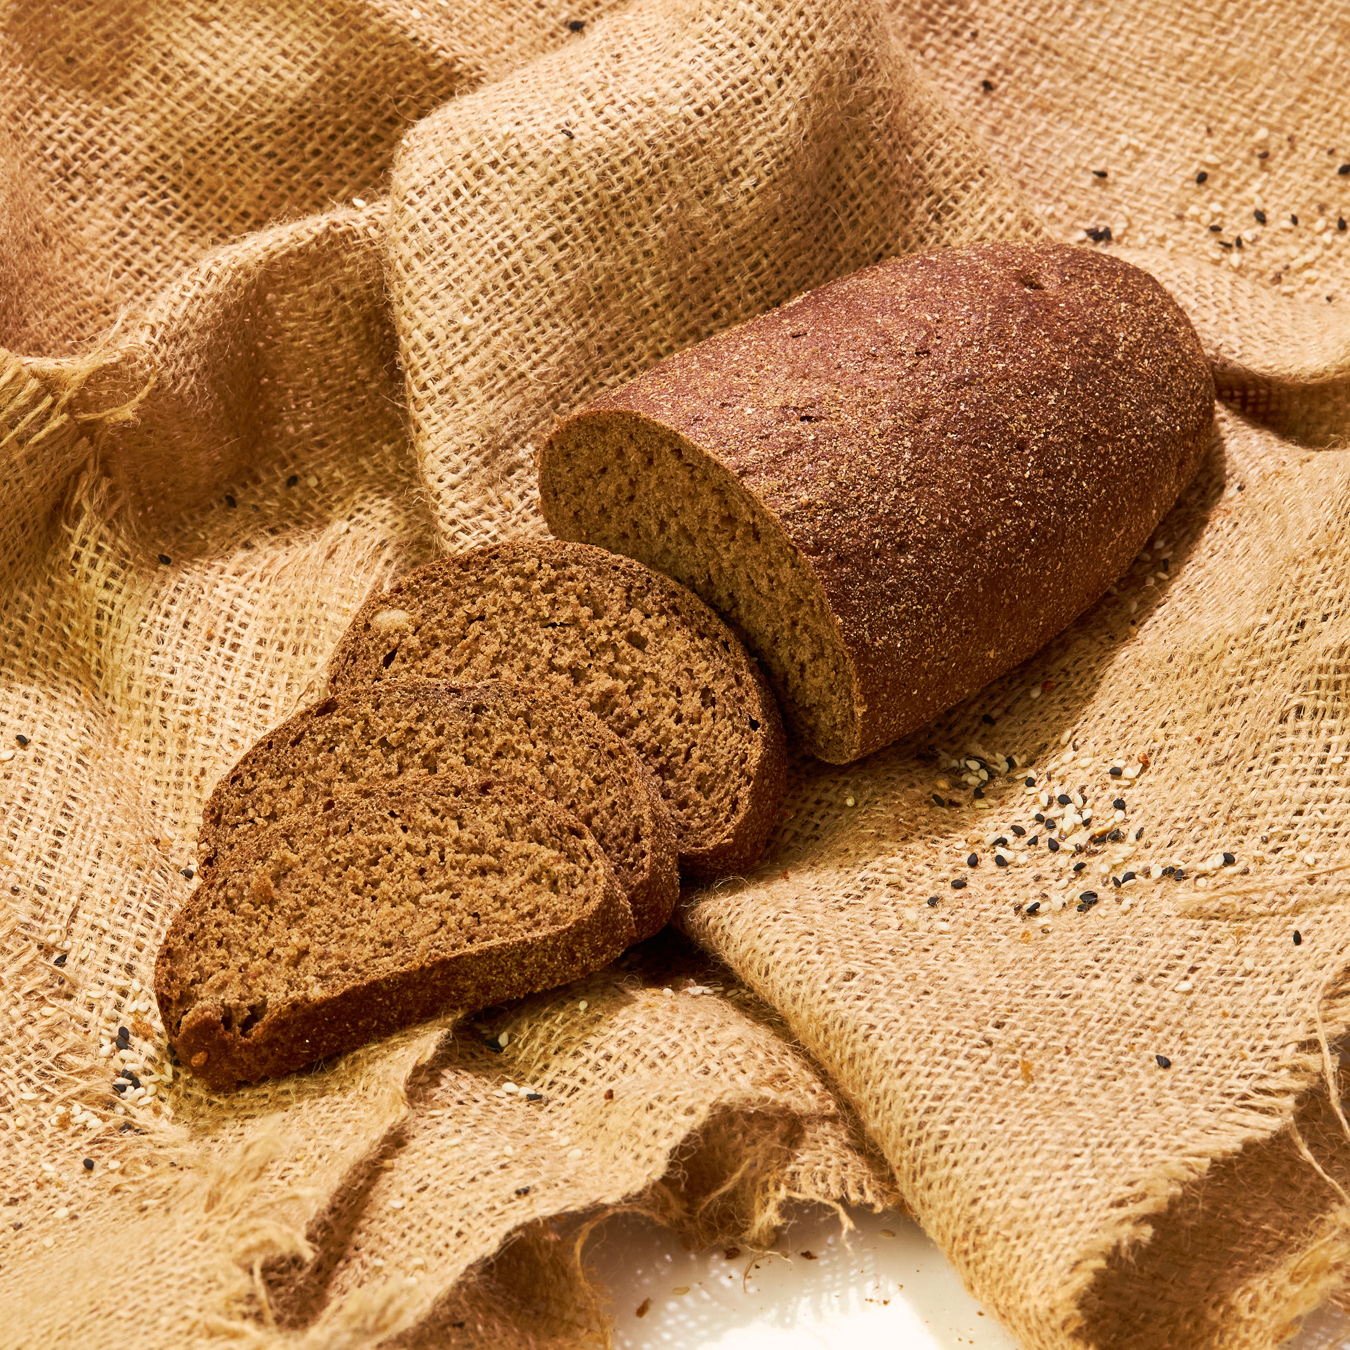 Rye bread with bran 350g 2